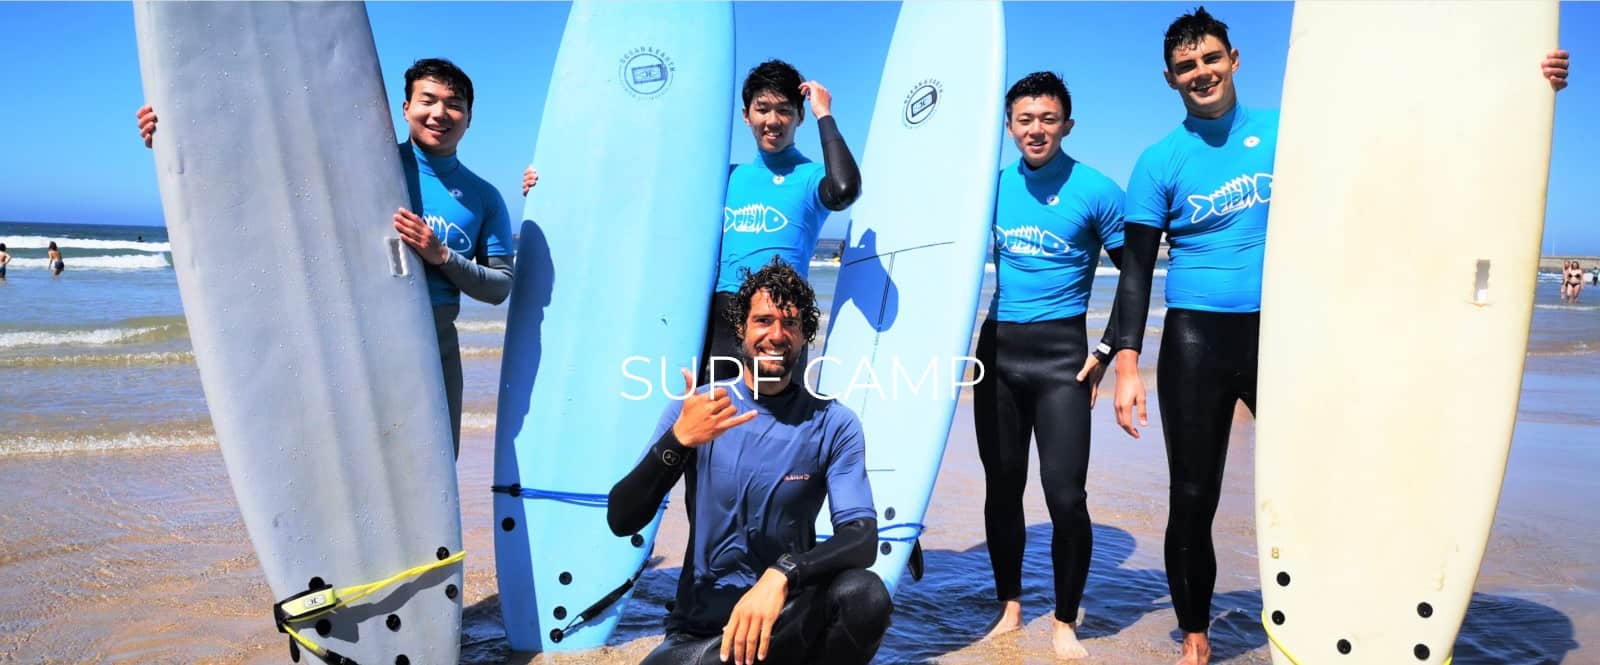 Surfcamp en Oporto, Portugal con “Fish Surf School” 🏄🏼🌞